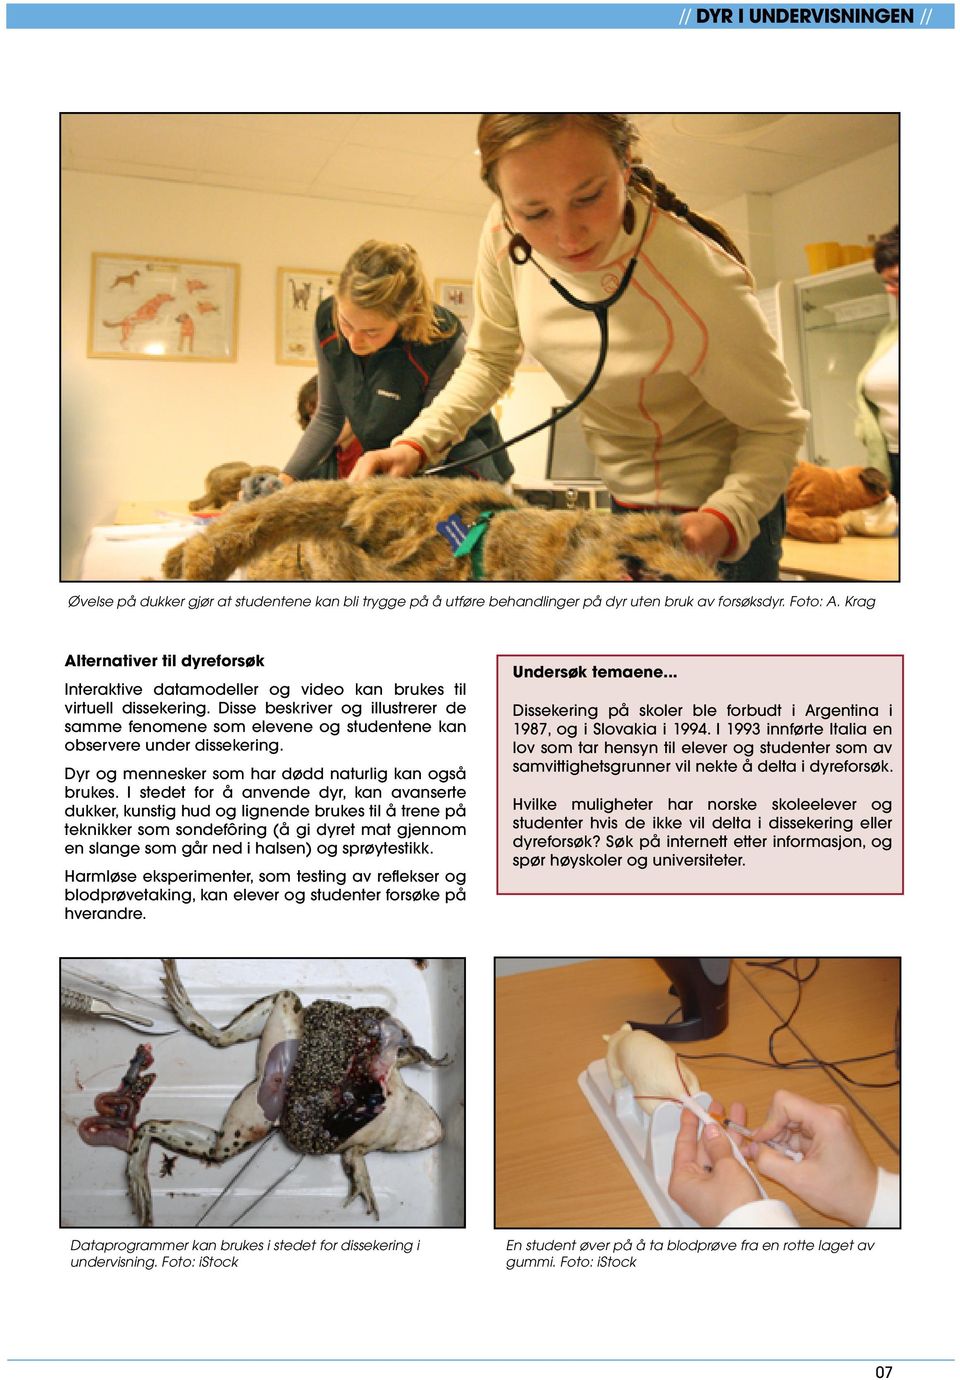 Disse beskriver og illustrerer de samme fenomene som elevene og studentene kan observere under dissekering. Dyr og mennesker som har dødd naturlig kan også brukes.